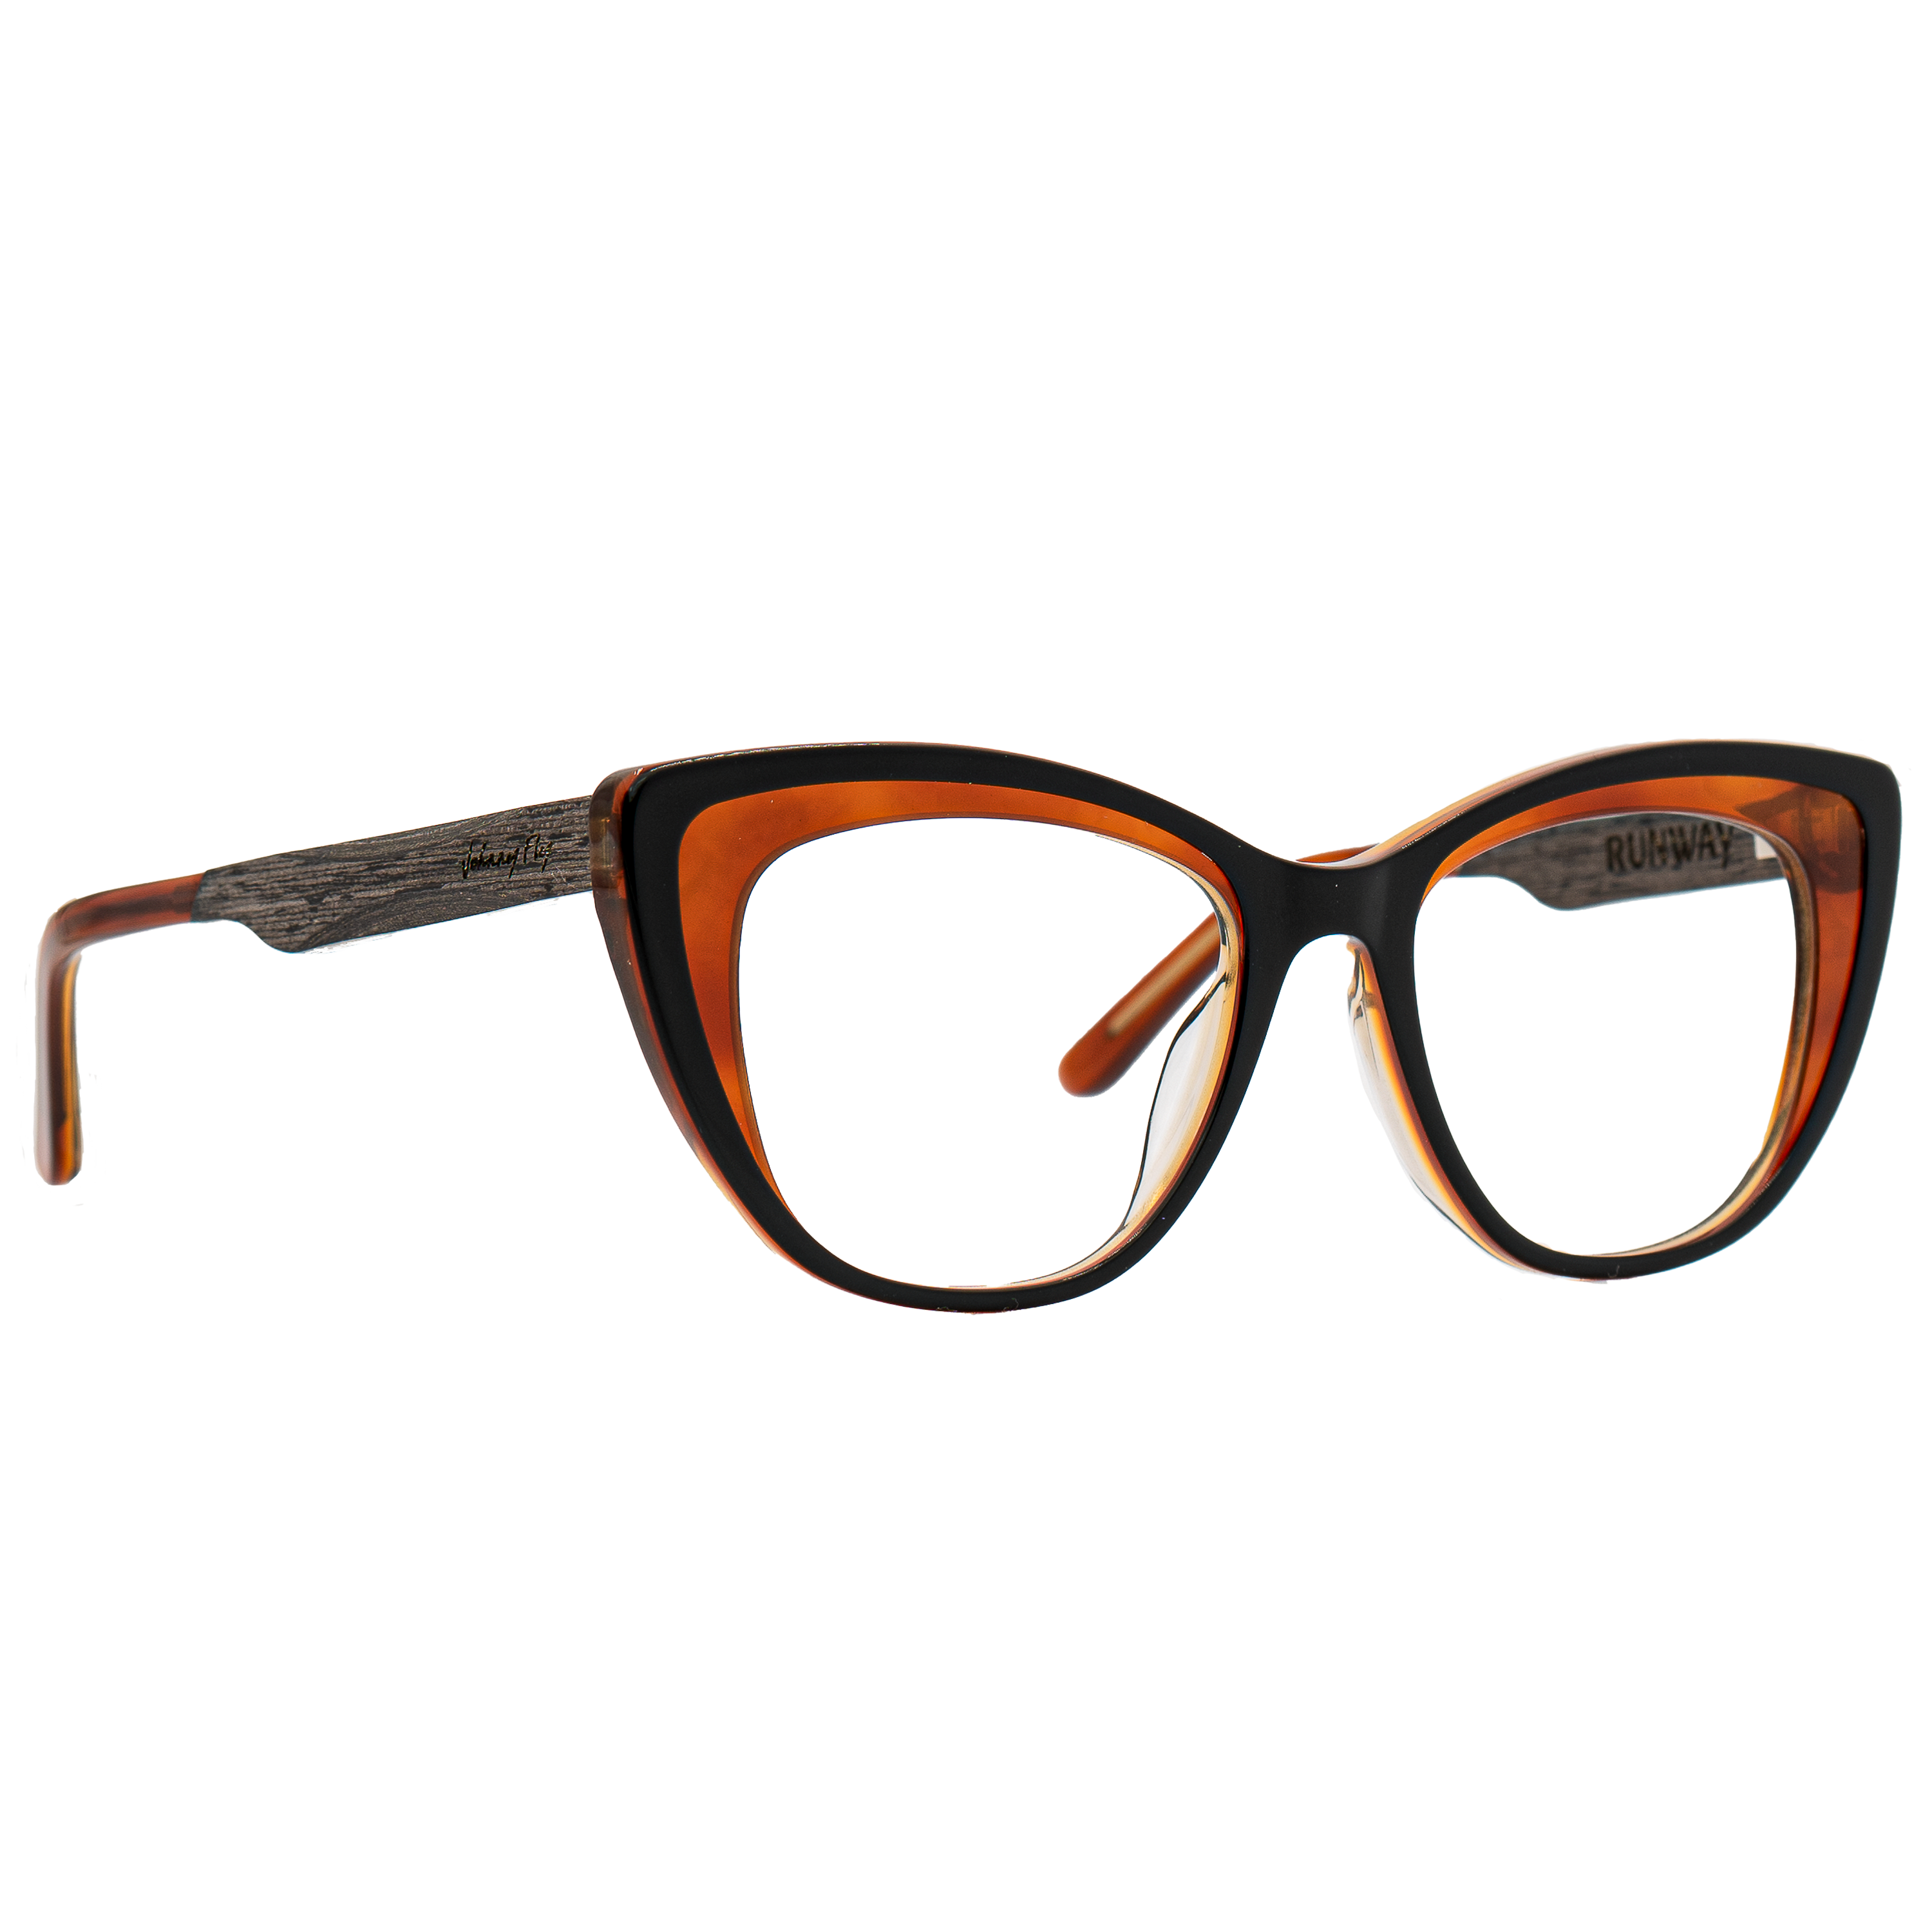 RUNWAY BLUGARD - Black Leaf - Blue Light Glasses - Johnny Fly Eyewear 